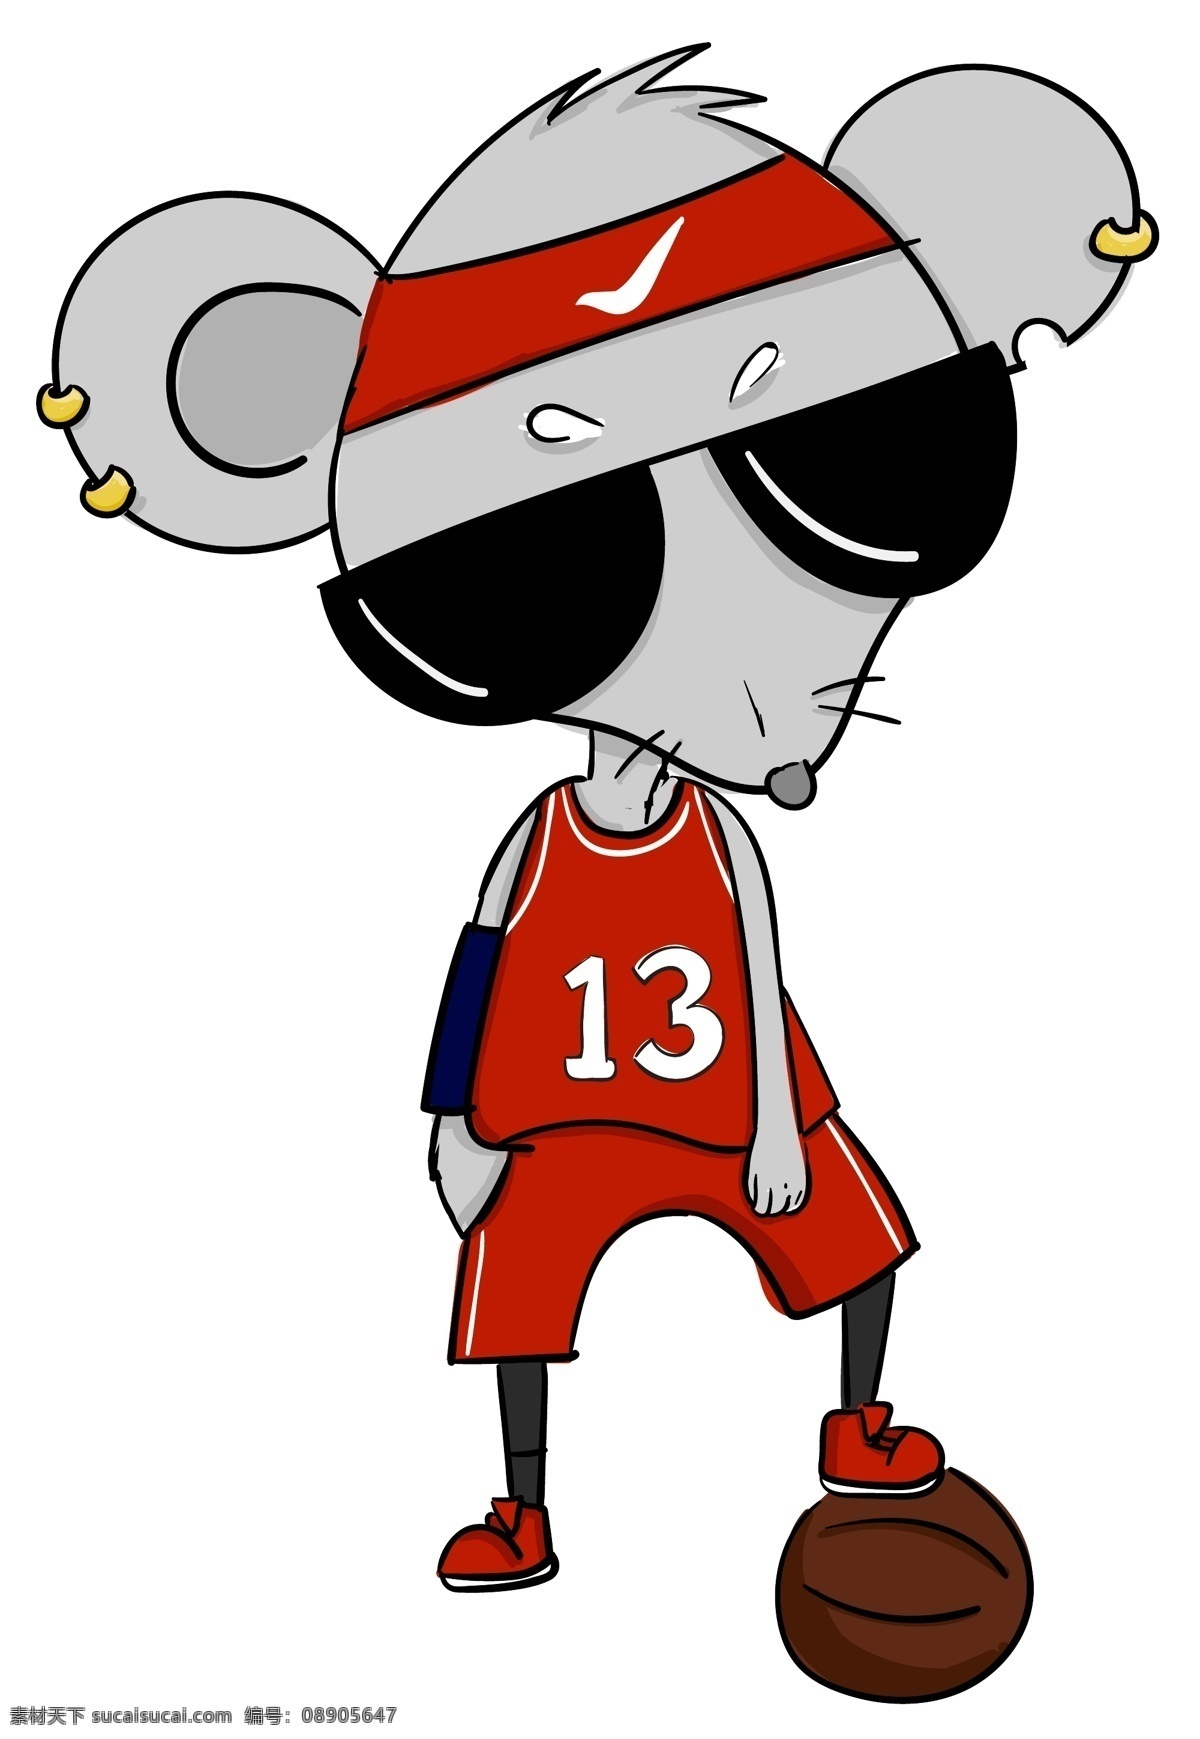 卡通 手绘 篮球 生肖 鼠 运动员 十二生肖 篮球服 运动 吉祥物 运动会 形象 篮球运动员